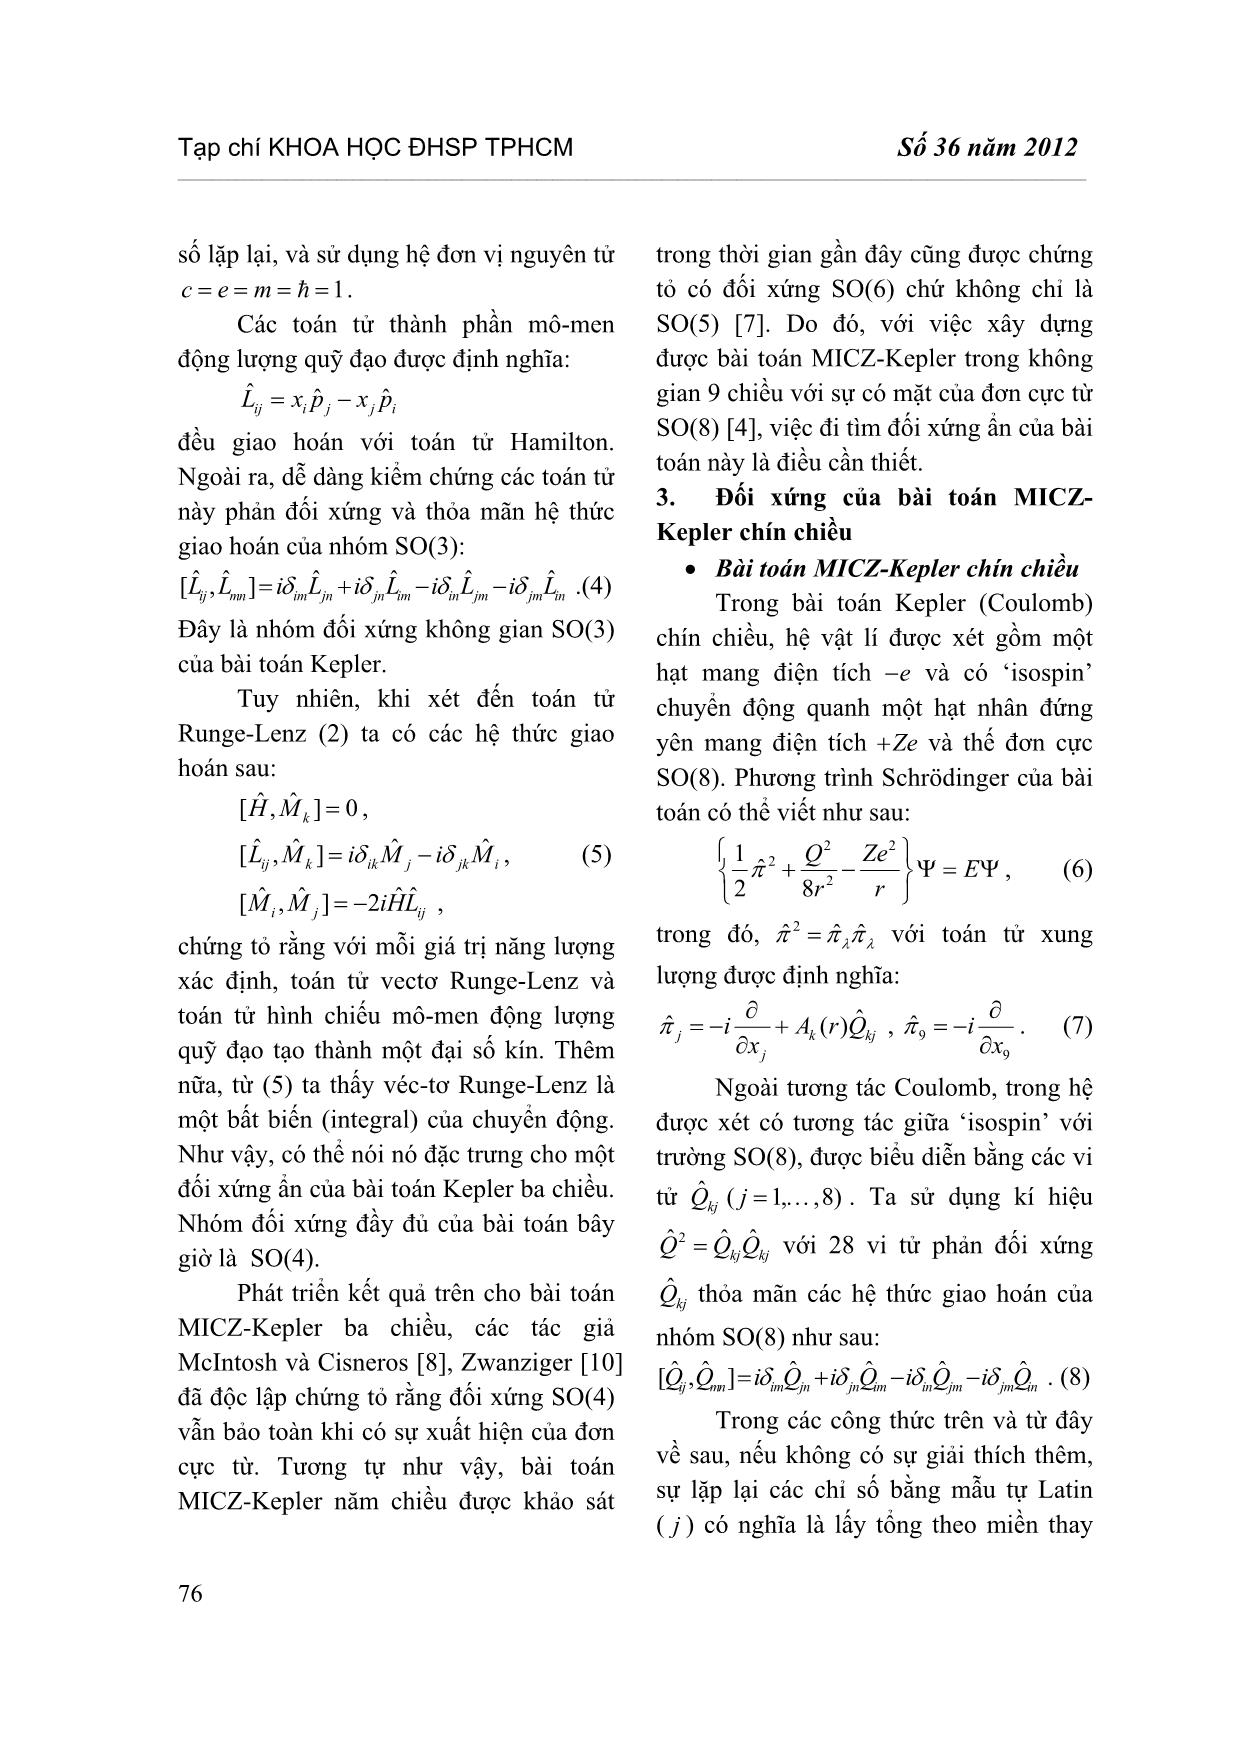 Đối xứng ẩn của bài toán Micz-Kepler chín chiều trang 3